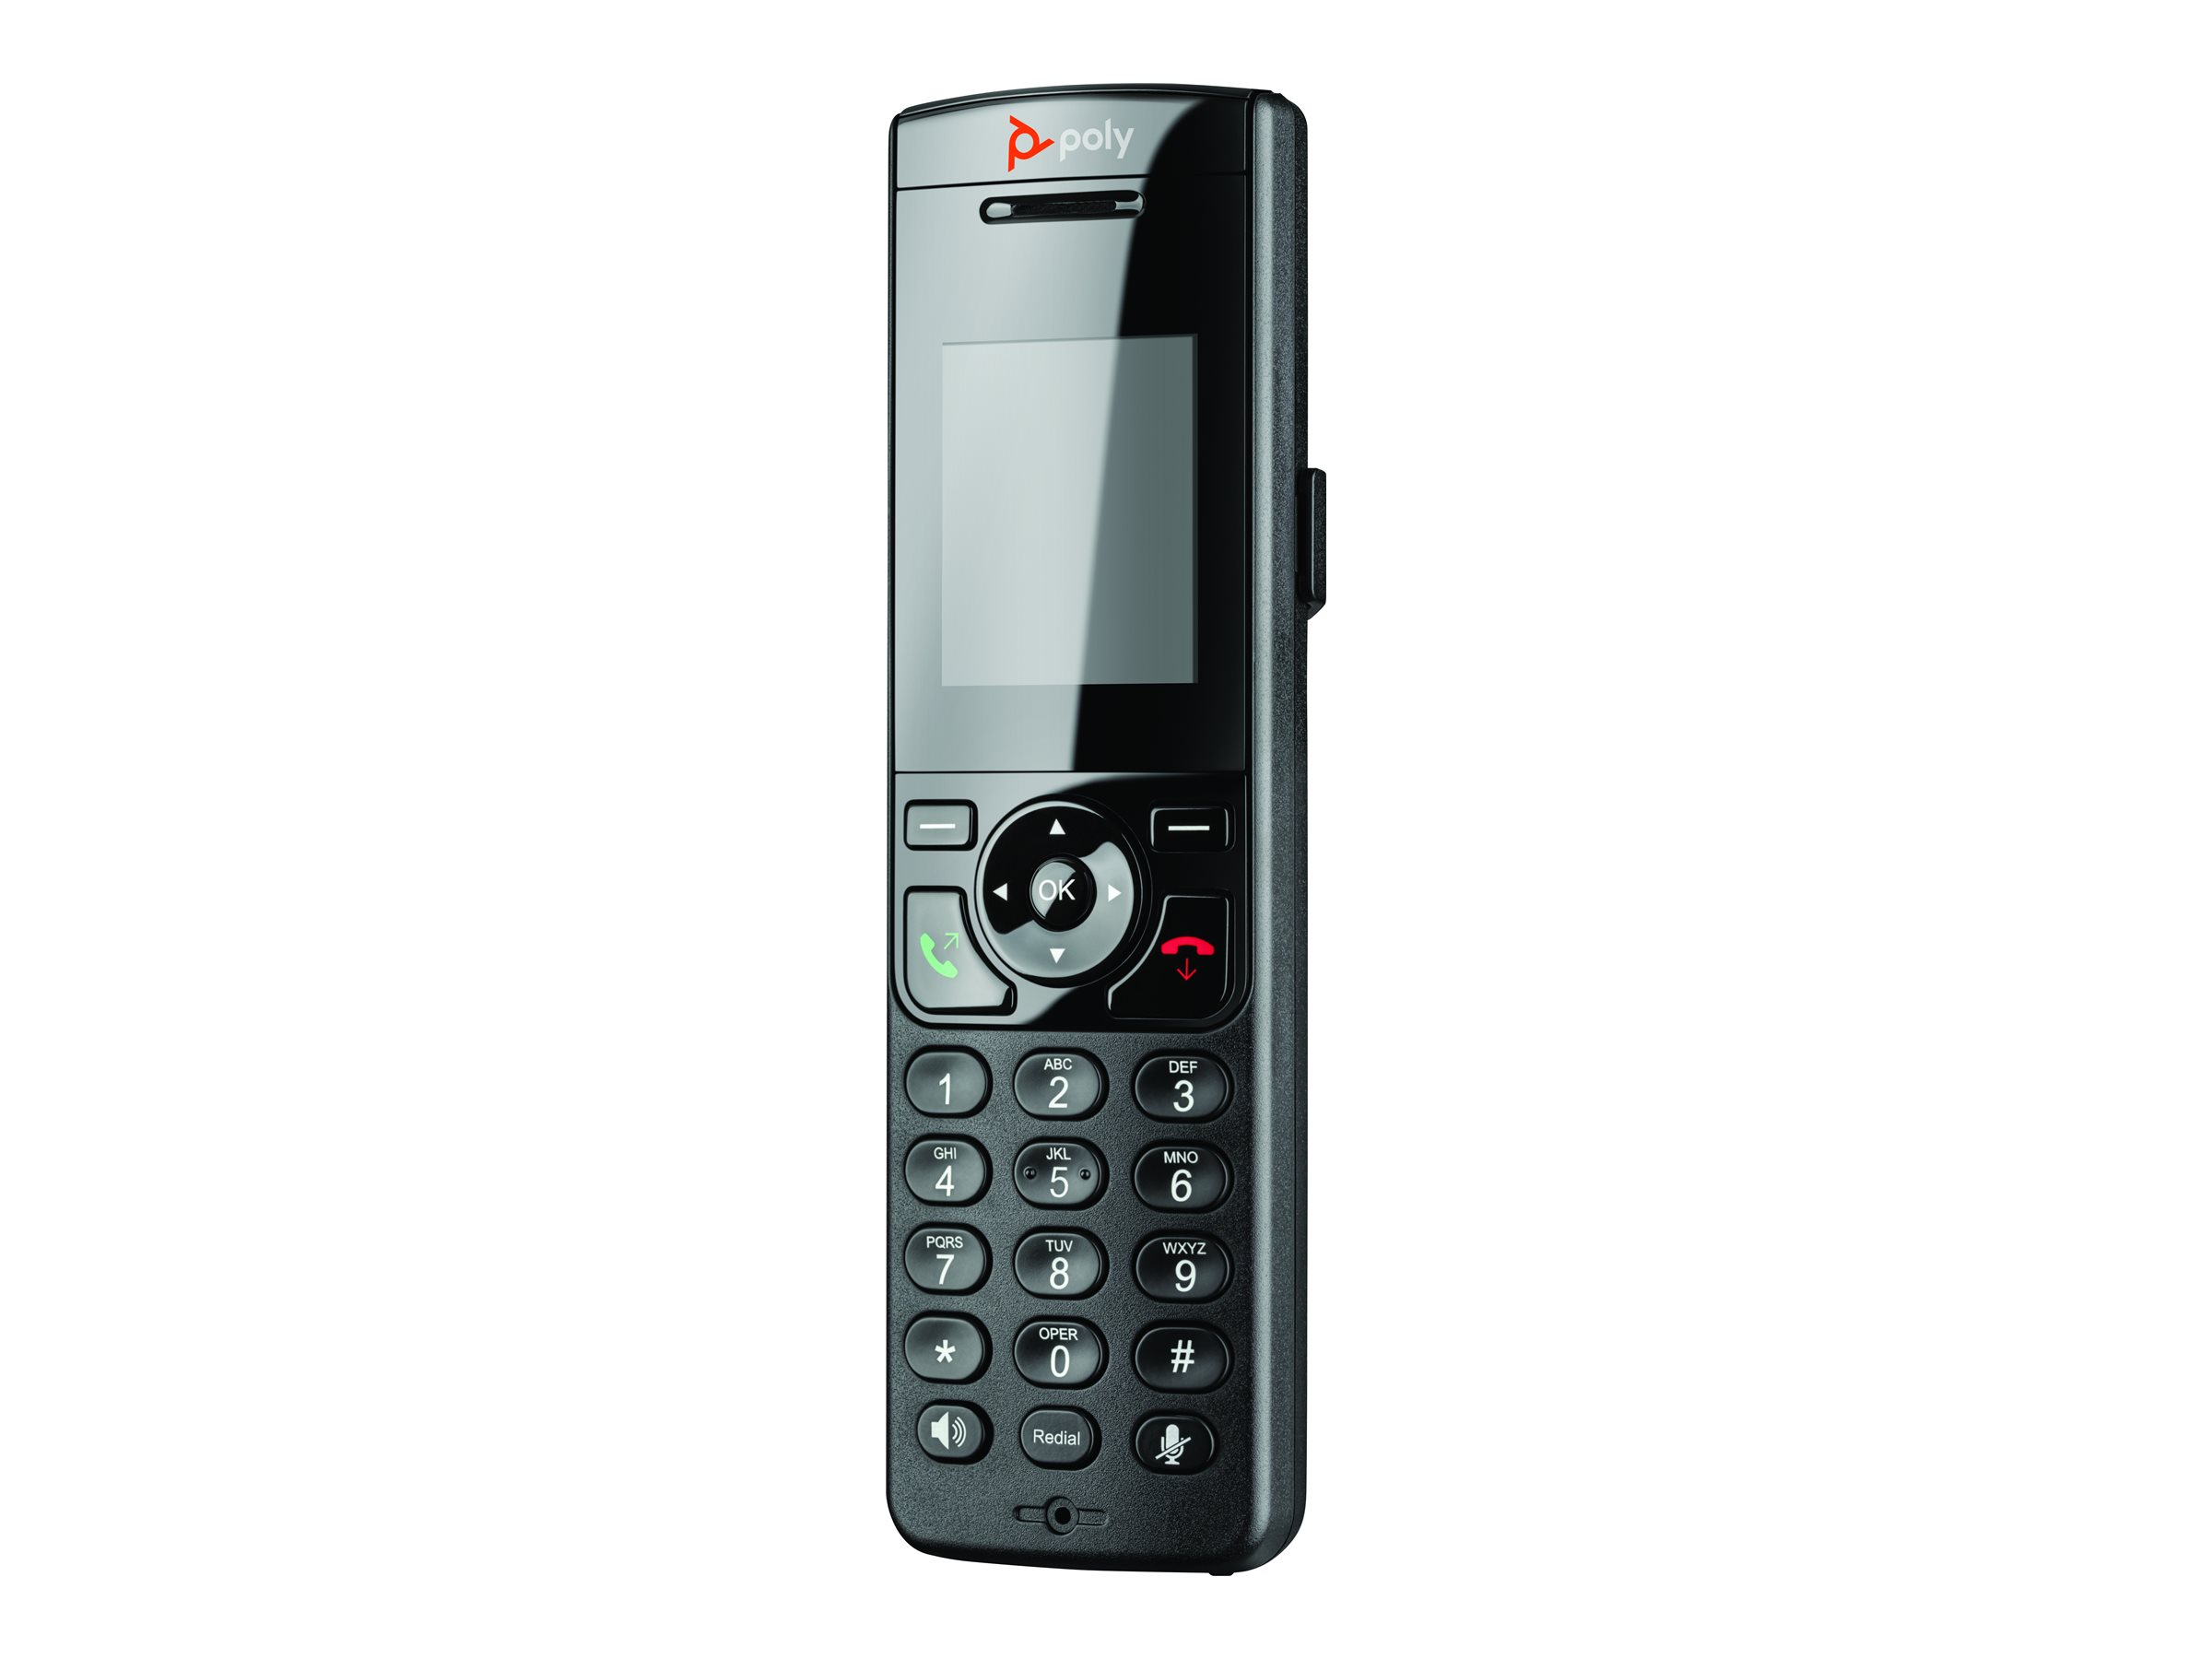 Poly VVX D230 - Cordless VoIP phone